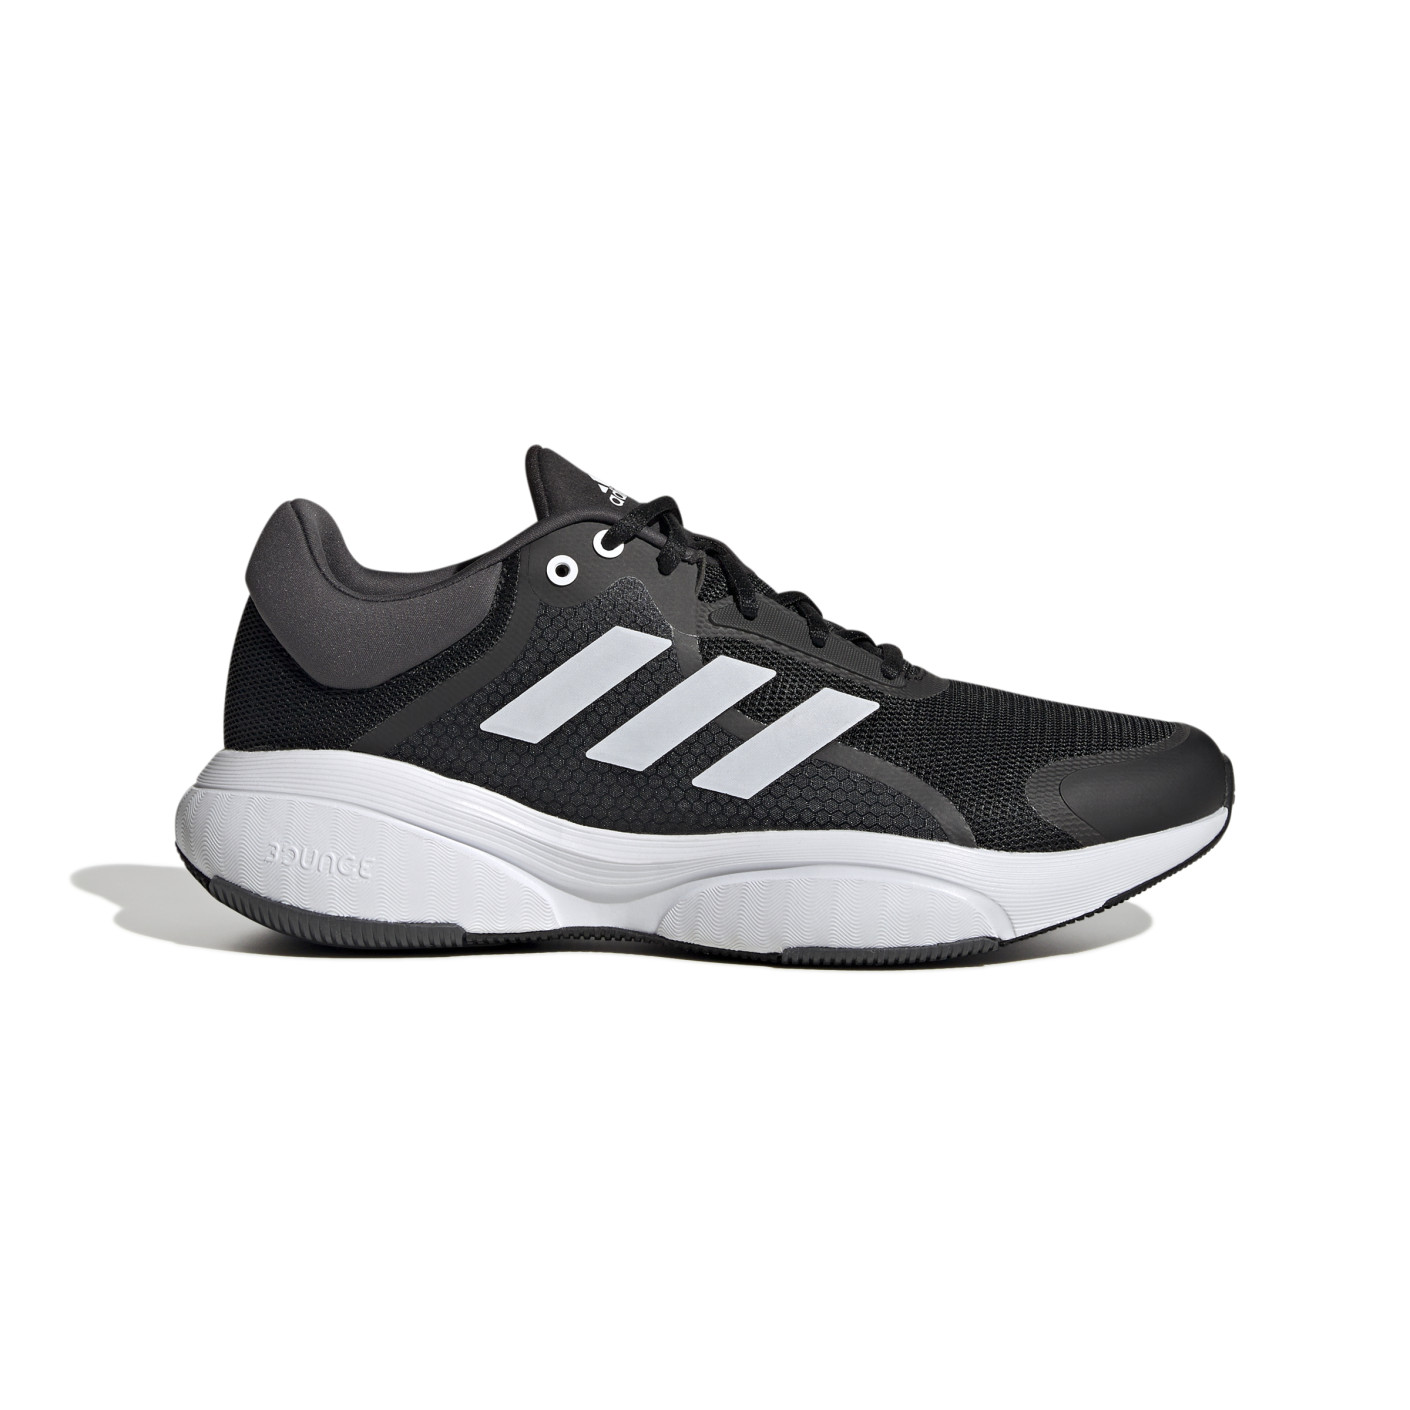 Chaussures de course Adidas Response noir gris blanc